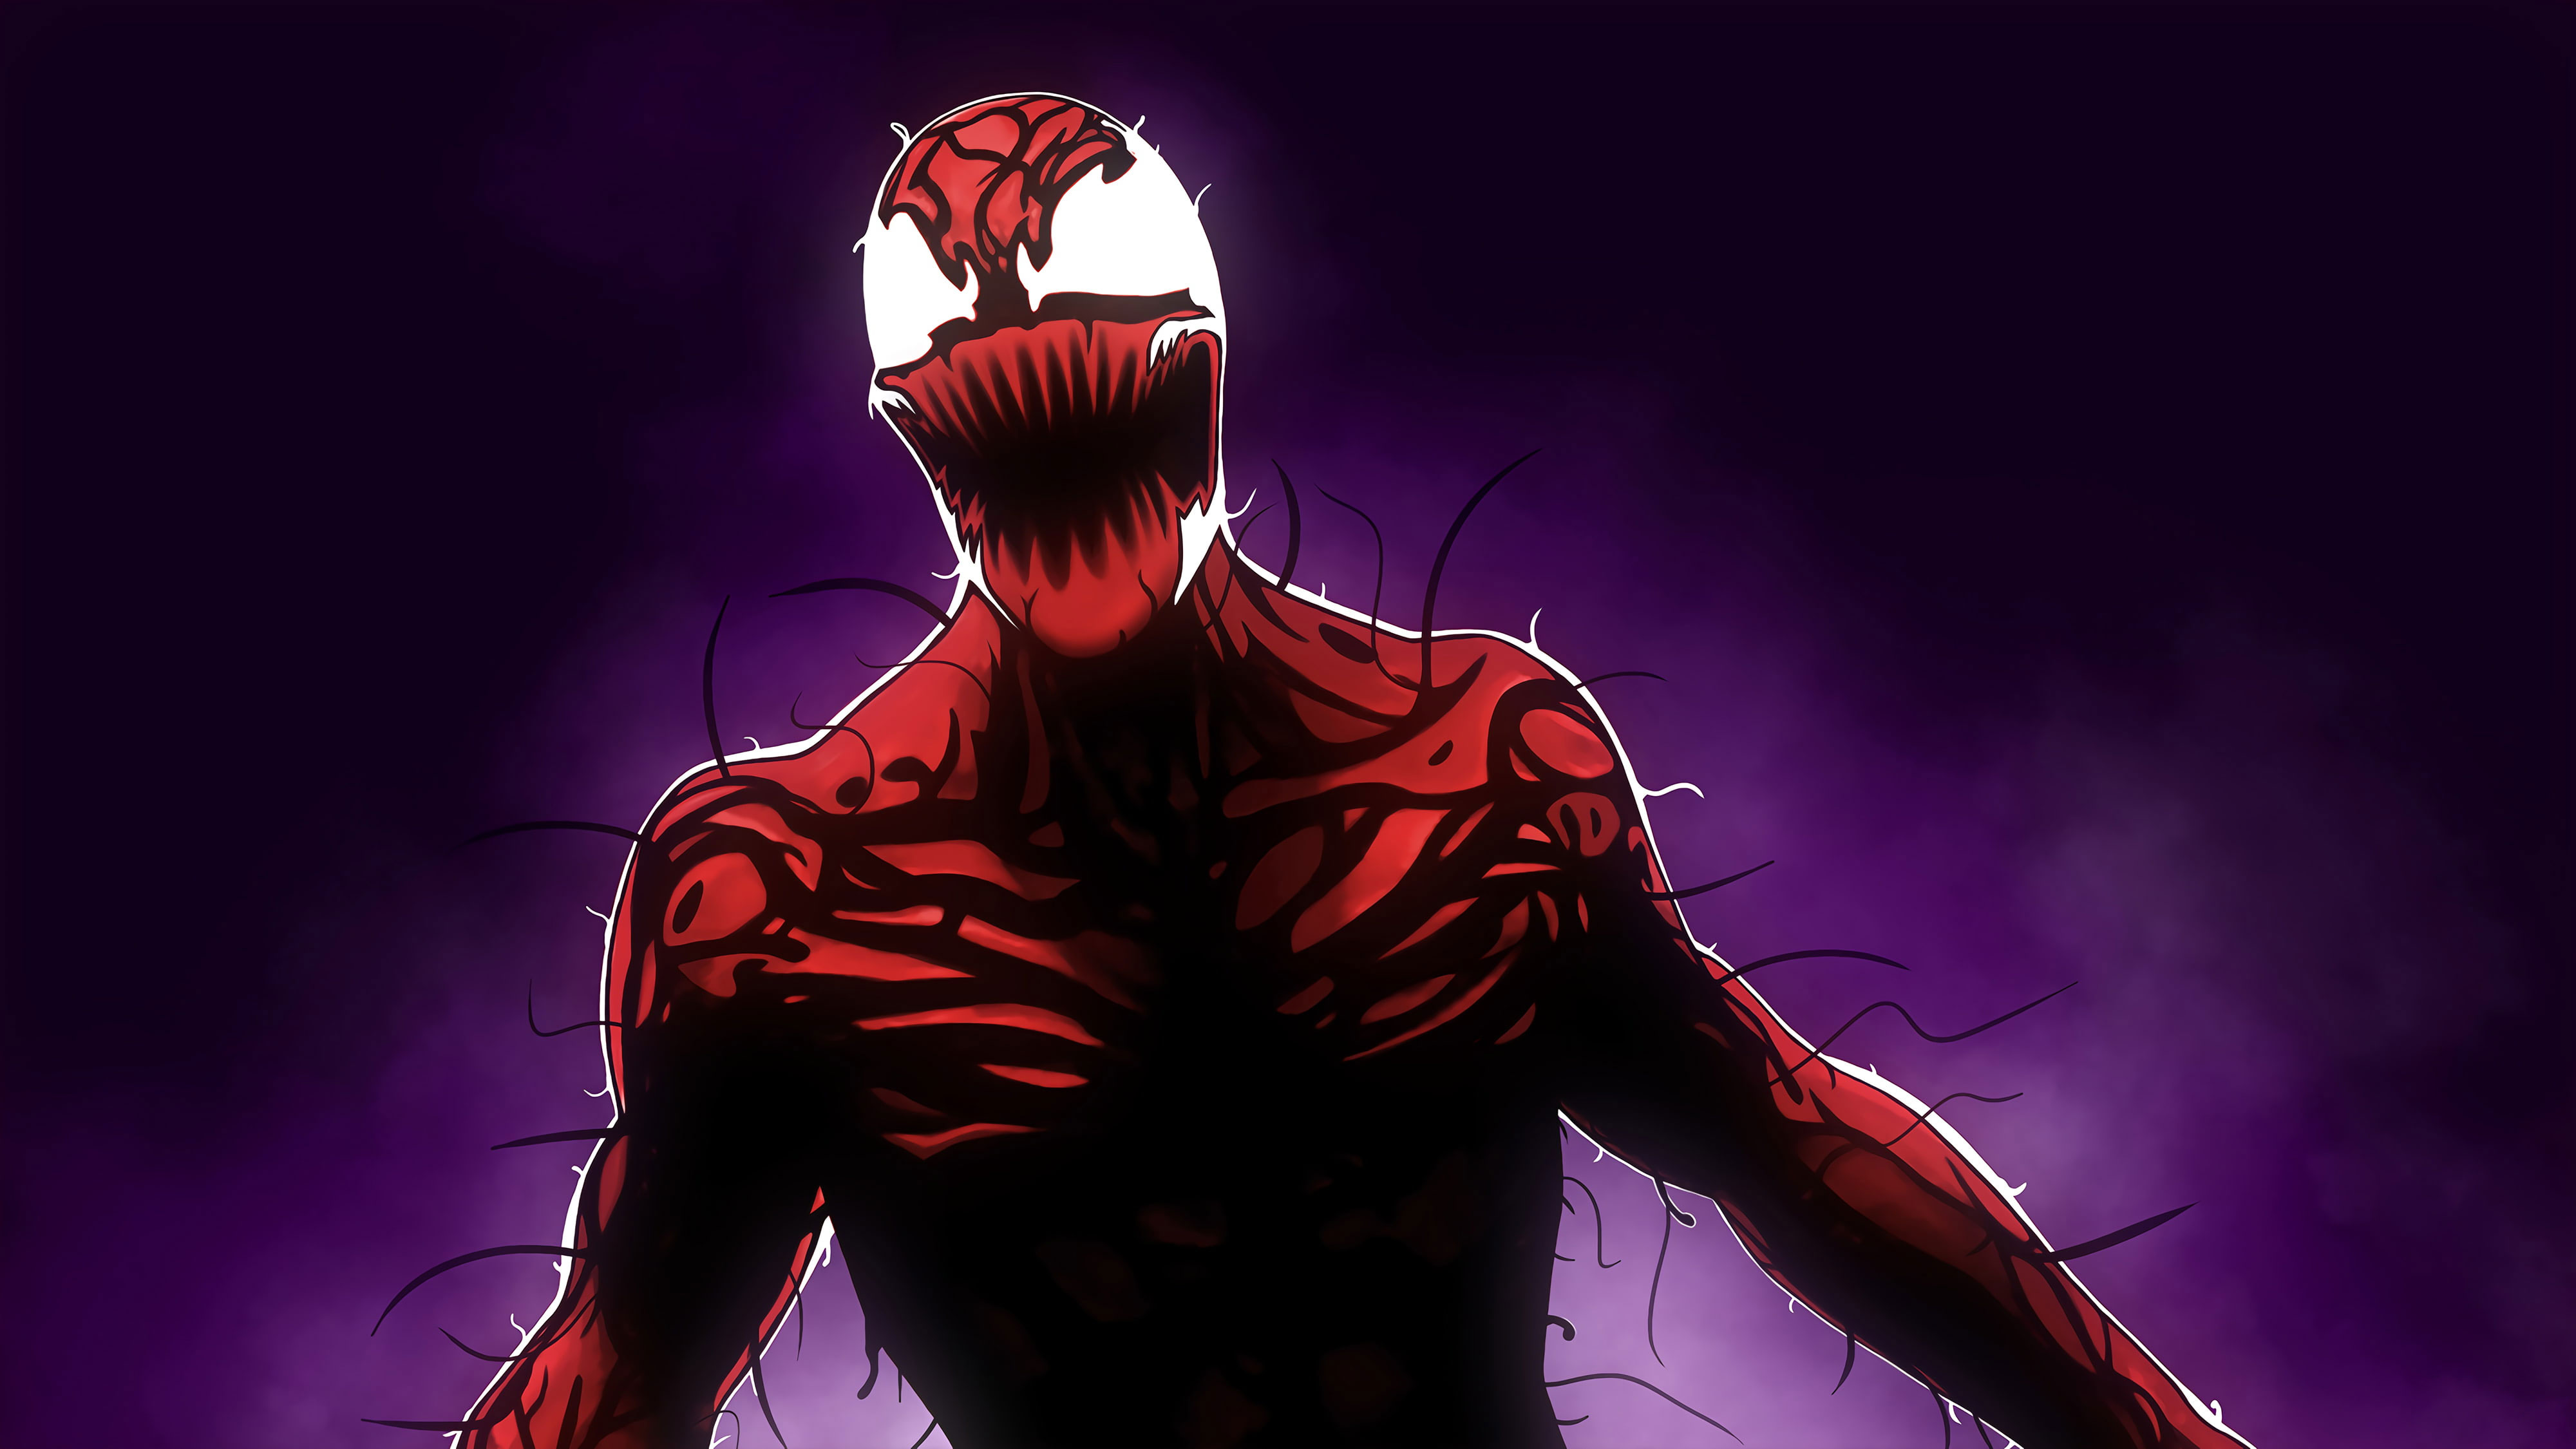 Free Venom Carnage Wallpaper Downloads 100 Venom Carnage Wallpapers for  FREE  Wallpaperscom